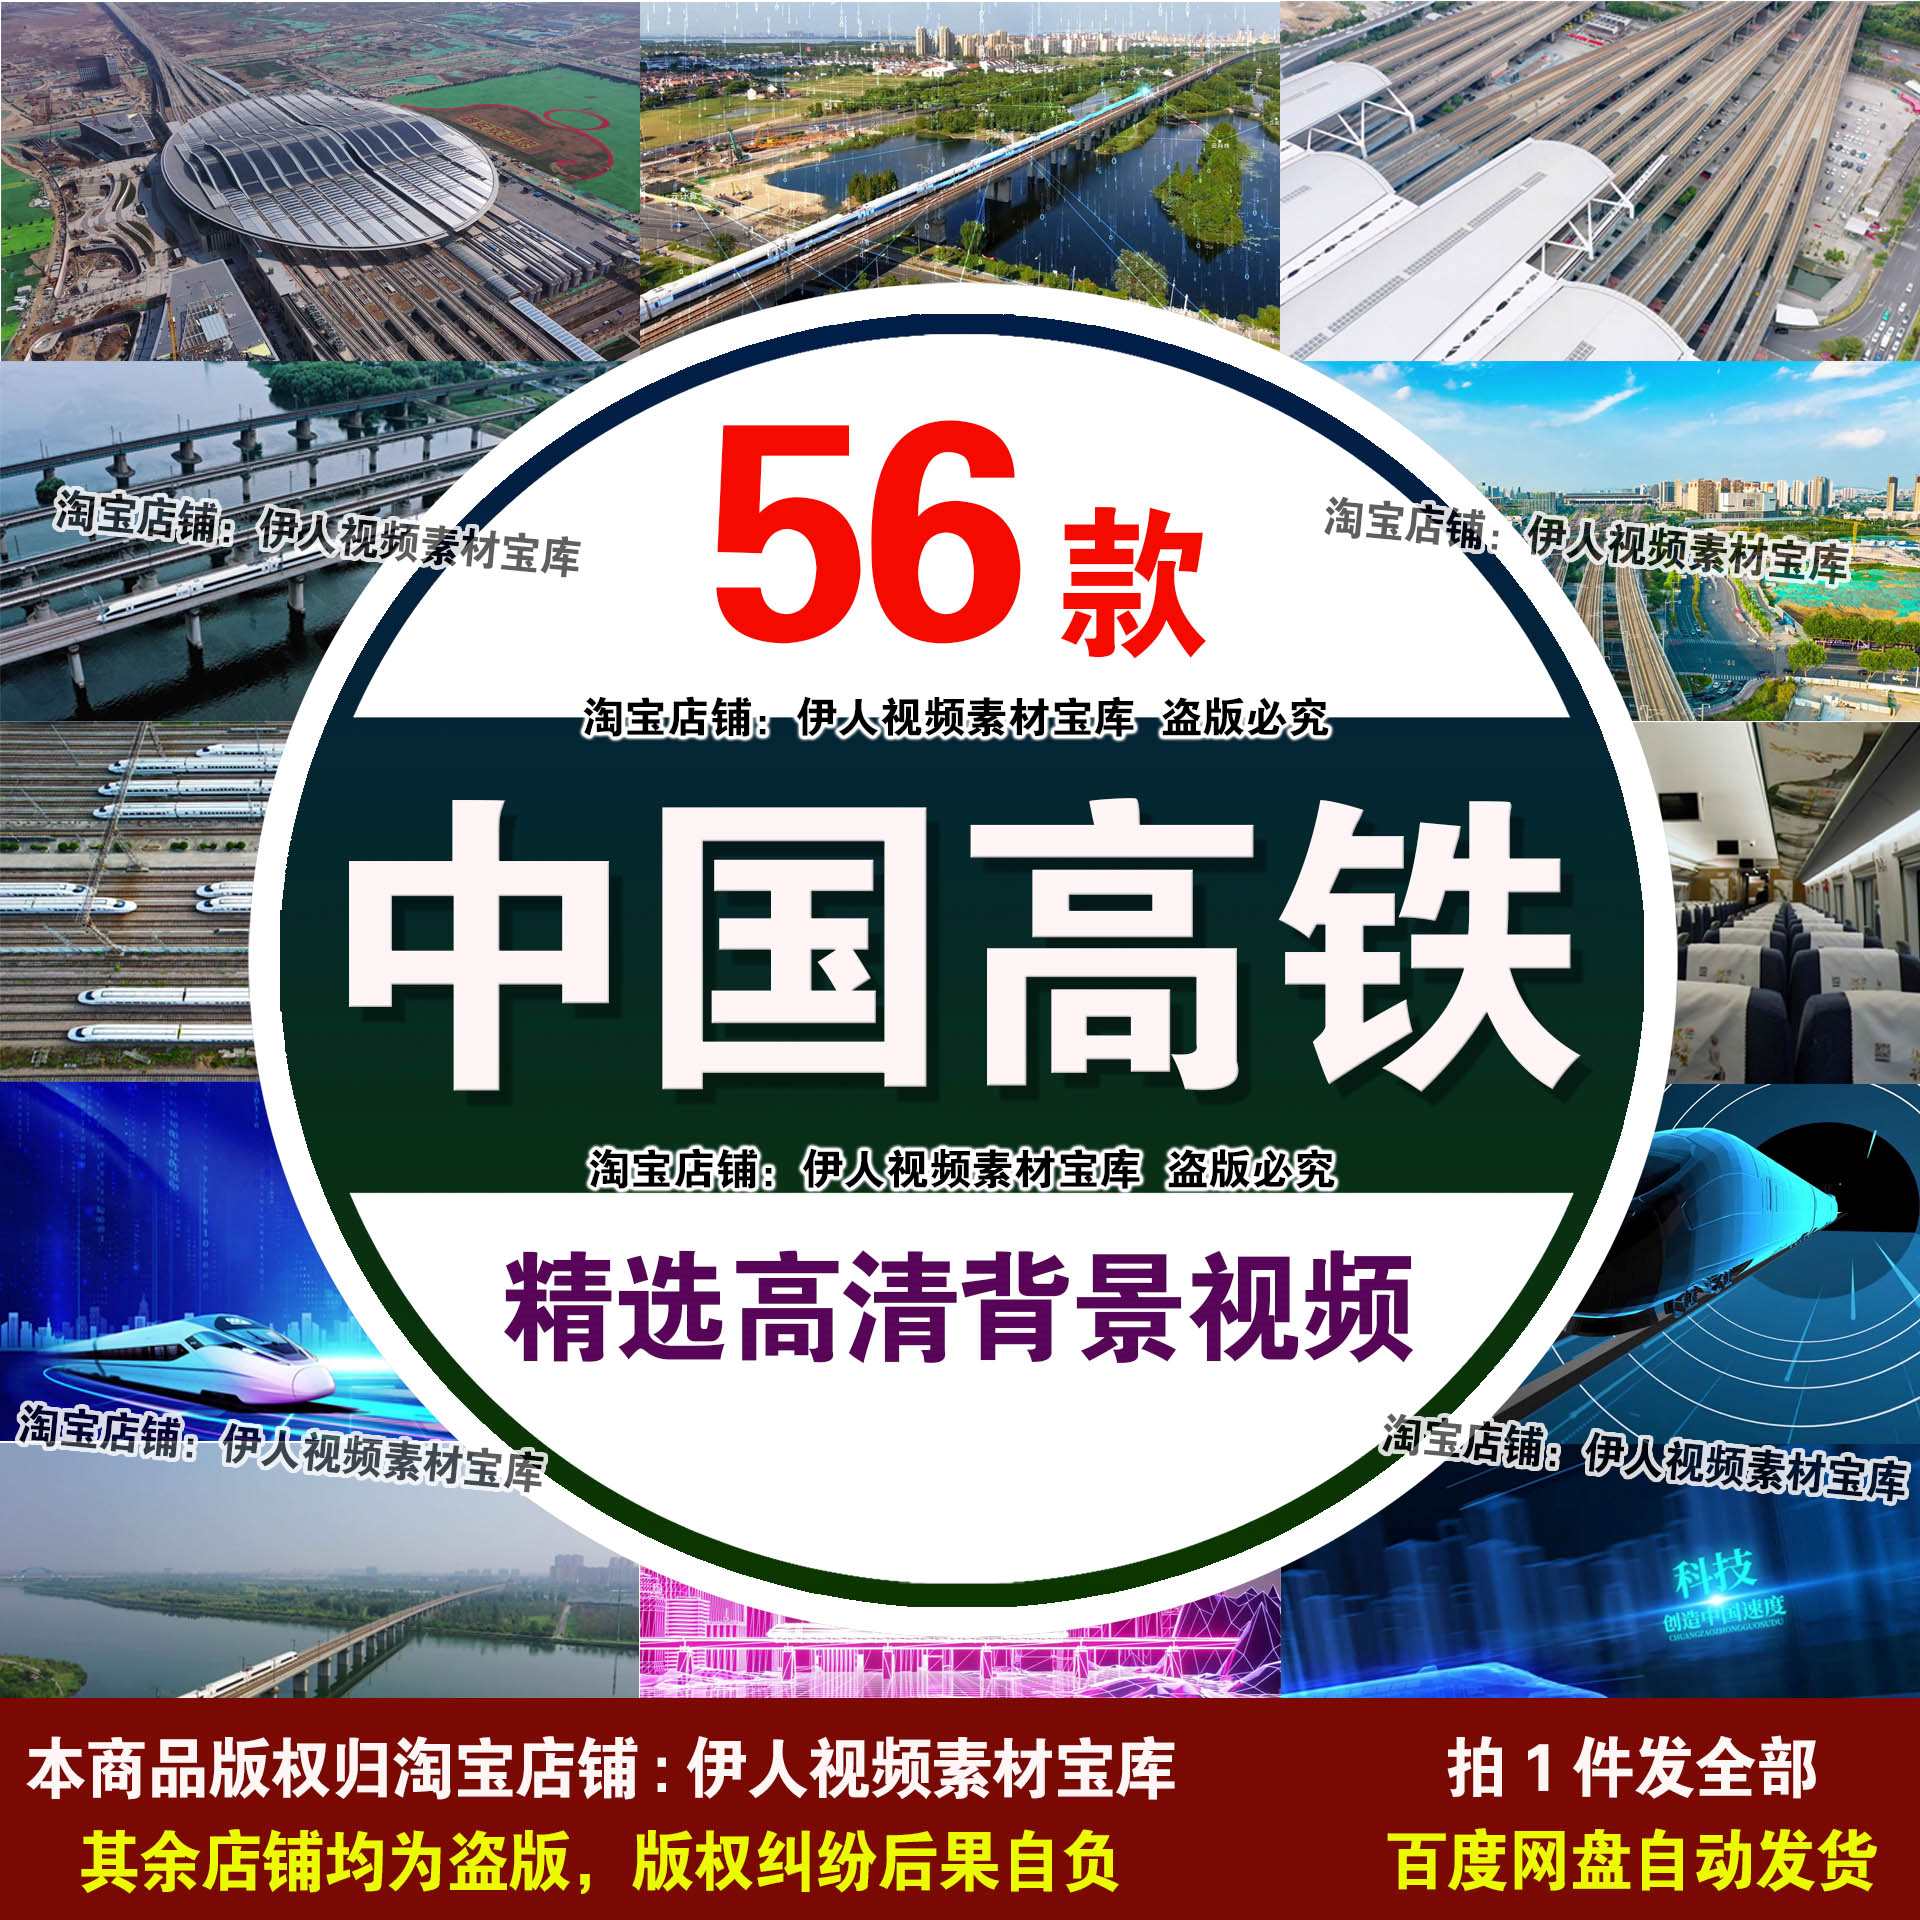 中国高铁实拍视频中国高铁动车铁路交通经济发展建设实拍视频素材